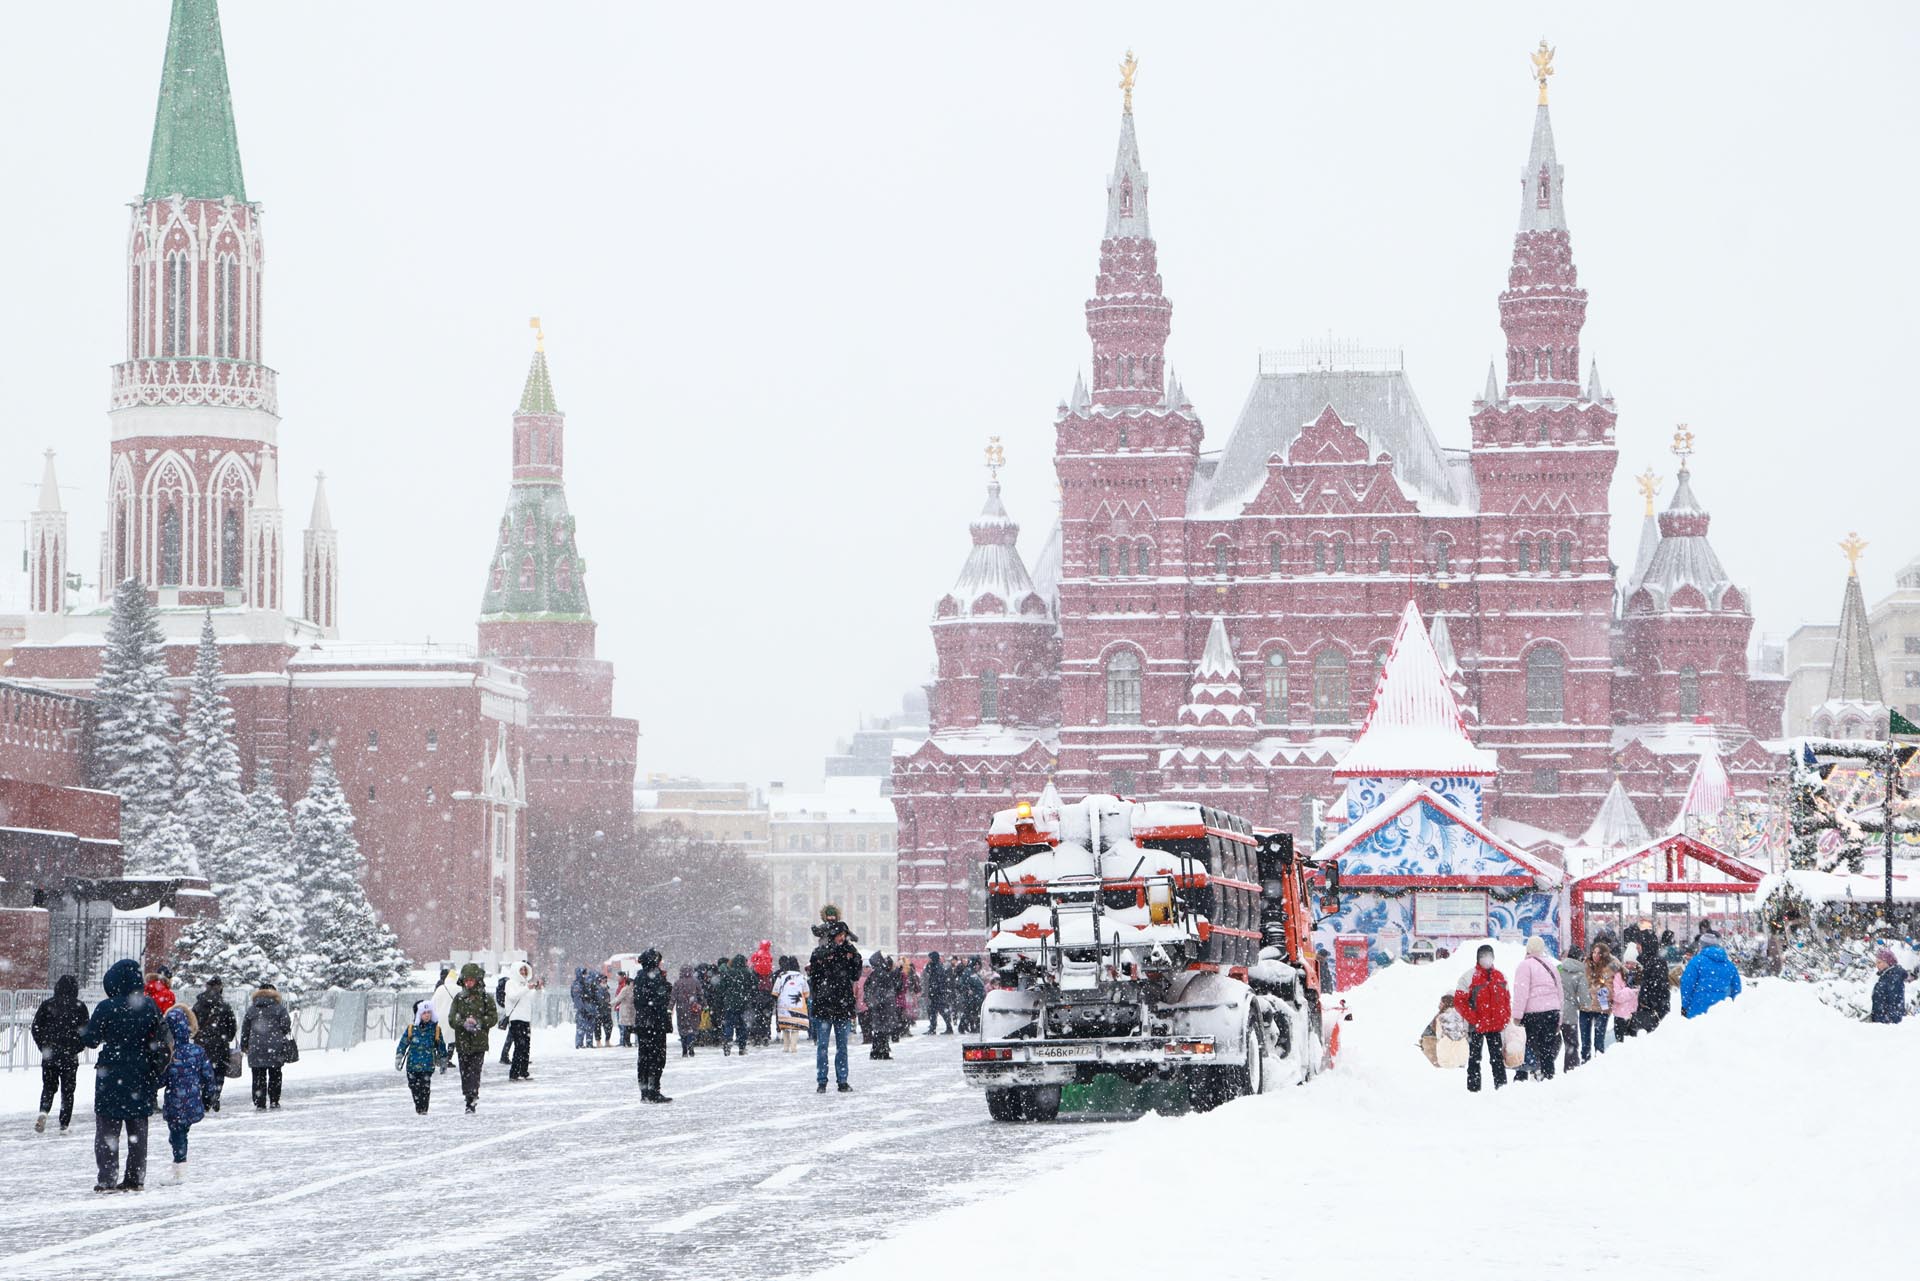 Un vehículo quitanieves opera en la Plaza Roja de Moscú. El Servicio Federal Ruso de Hidrometeorología y Monitoreo Ambiental emitió una advertencia de tormenta de nieve a partir del 17 de diciembre. Se esperan condiciones nubladas y tormentas de nieve en Moscú el 18 de diciembre
